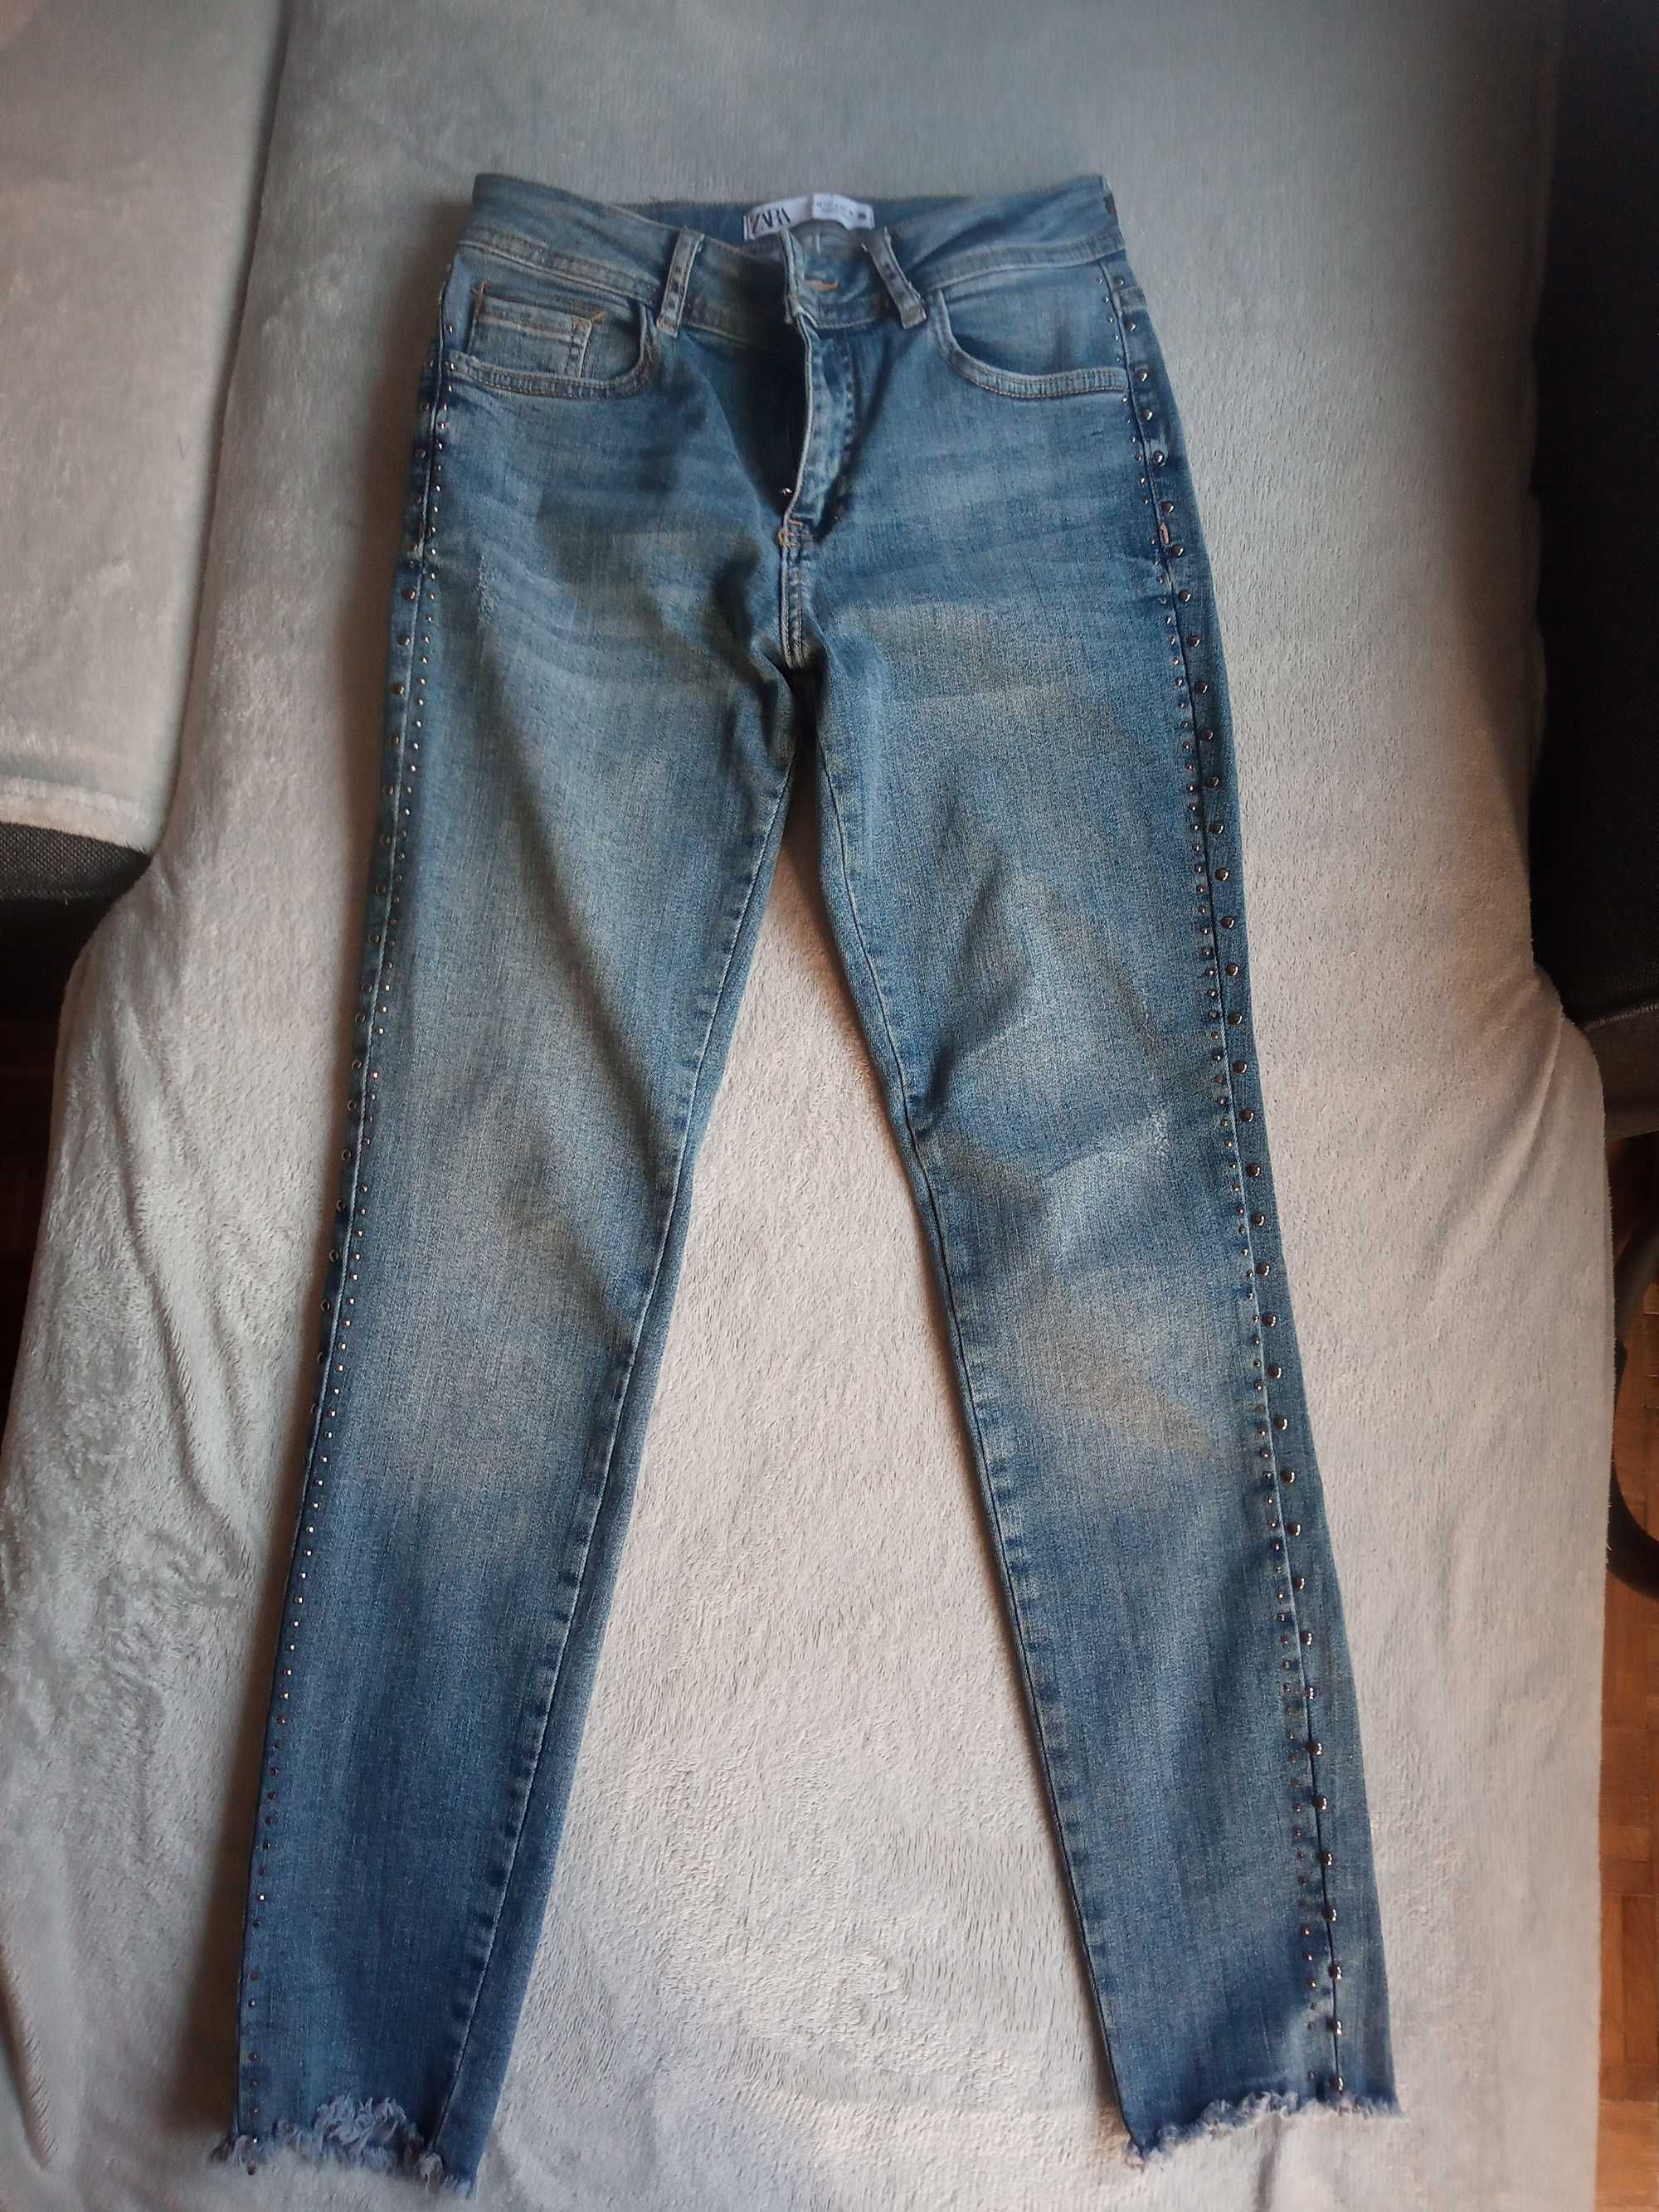 Spodnie jeansy ZARA z ćwiekami, dżetami, r. 36